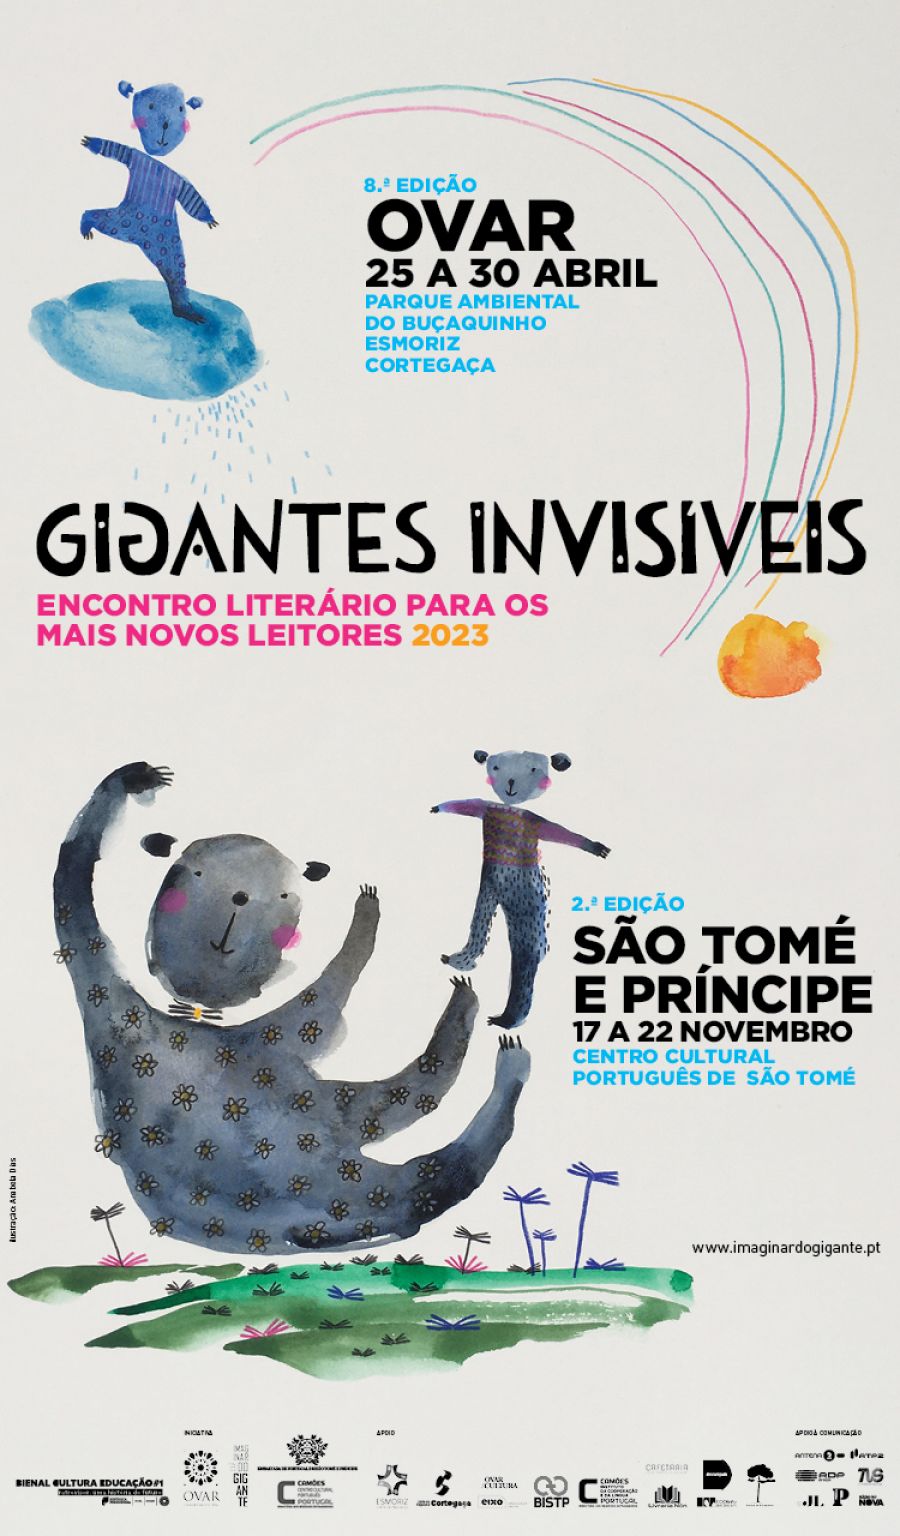 GIGANTES INVISÍVEIS - 8 encontro literário para os mais novos leitores, 2023